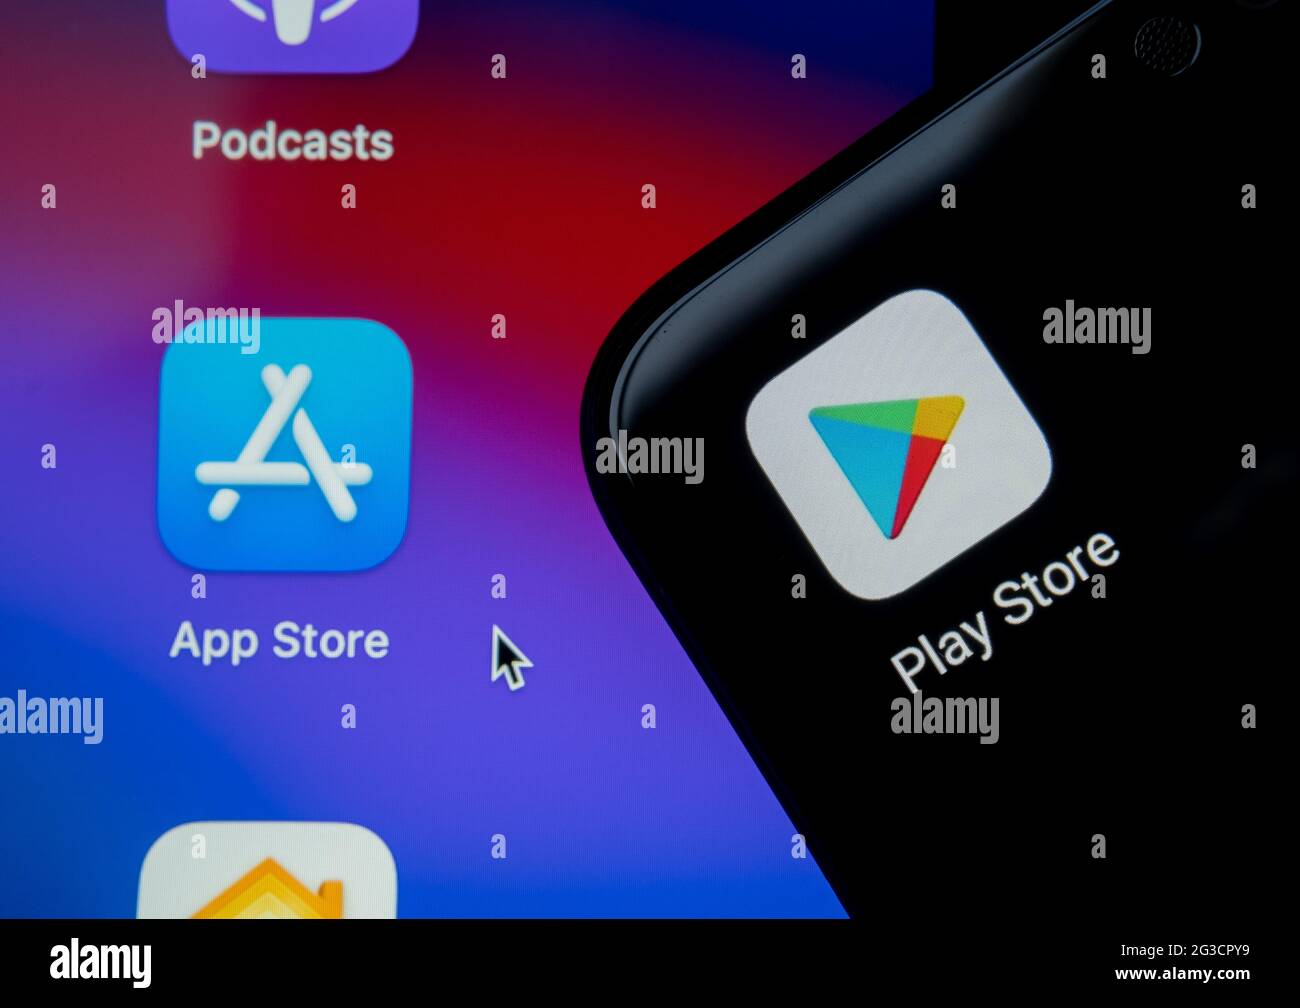 Google Play Store et les applications floues de l'App Store sont visibles sur les écrans des smartphones android et des ordinateurs portables Apple macbook M1. Concept. Stafford, Royaume-Uni, 15 juin 2021. Banque D'Images